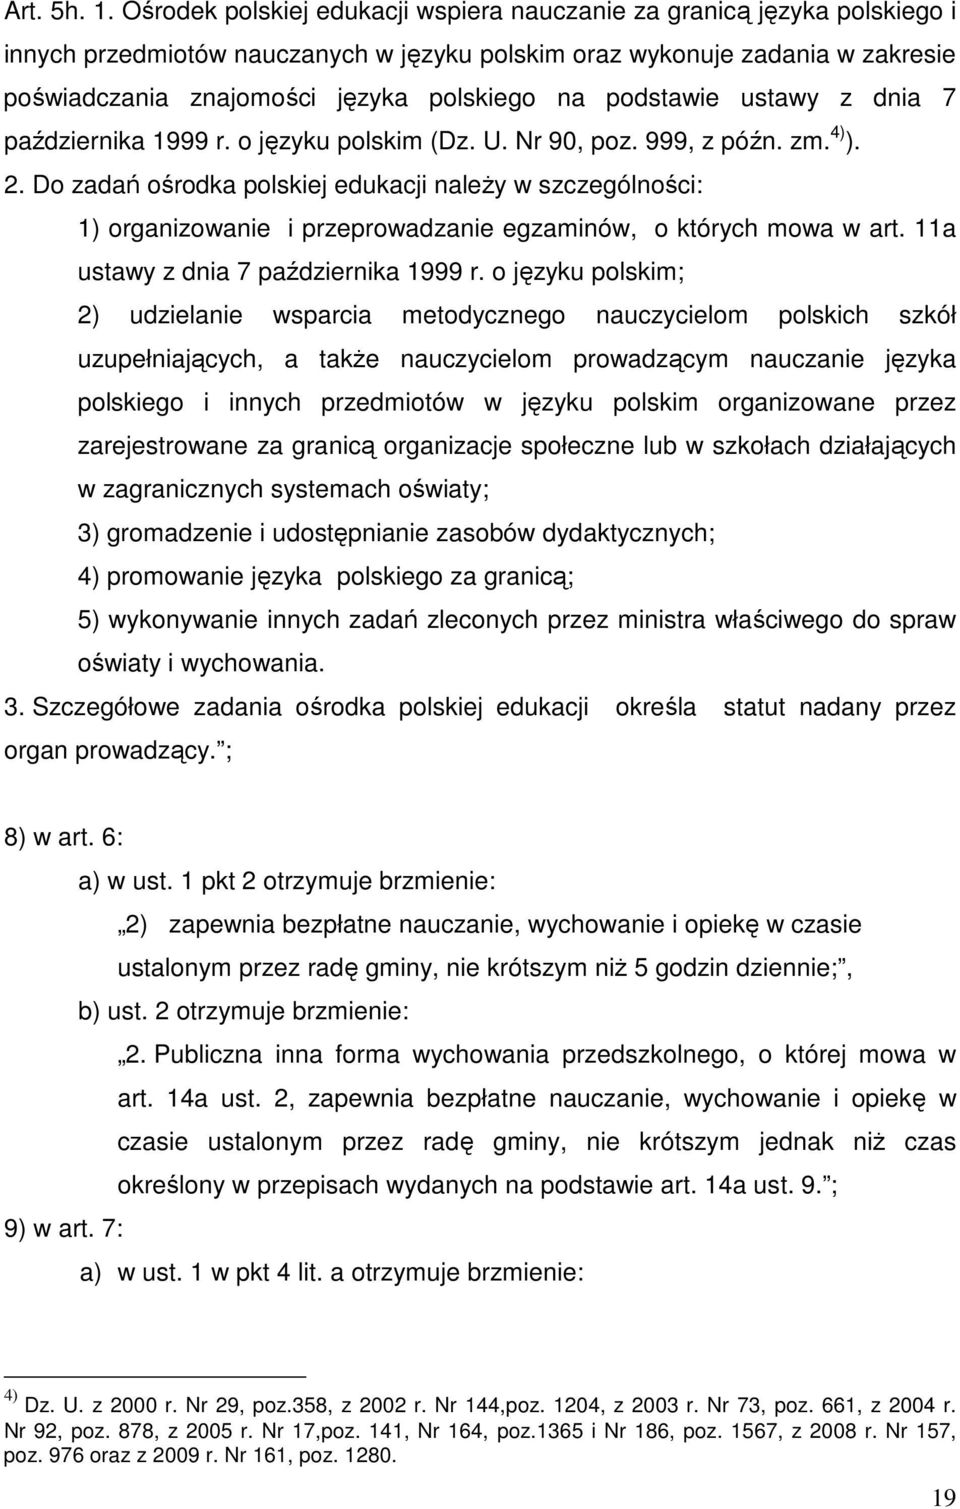 podstawie ustawy z dnia 7 października 1999 r. o języku polskim (Dz. U. Nr 90, poz. 999, z późn. zm. 4) ). 2.